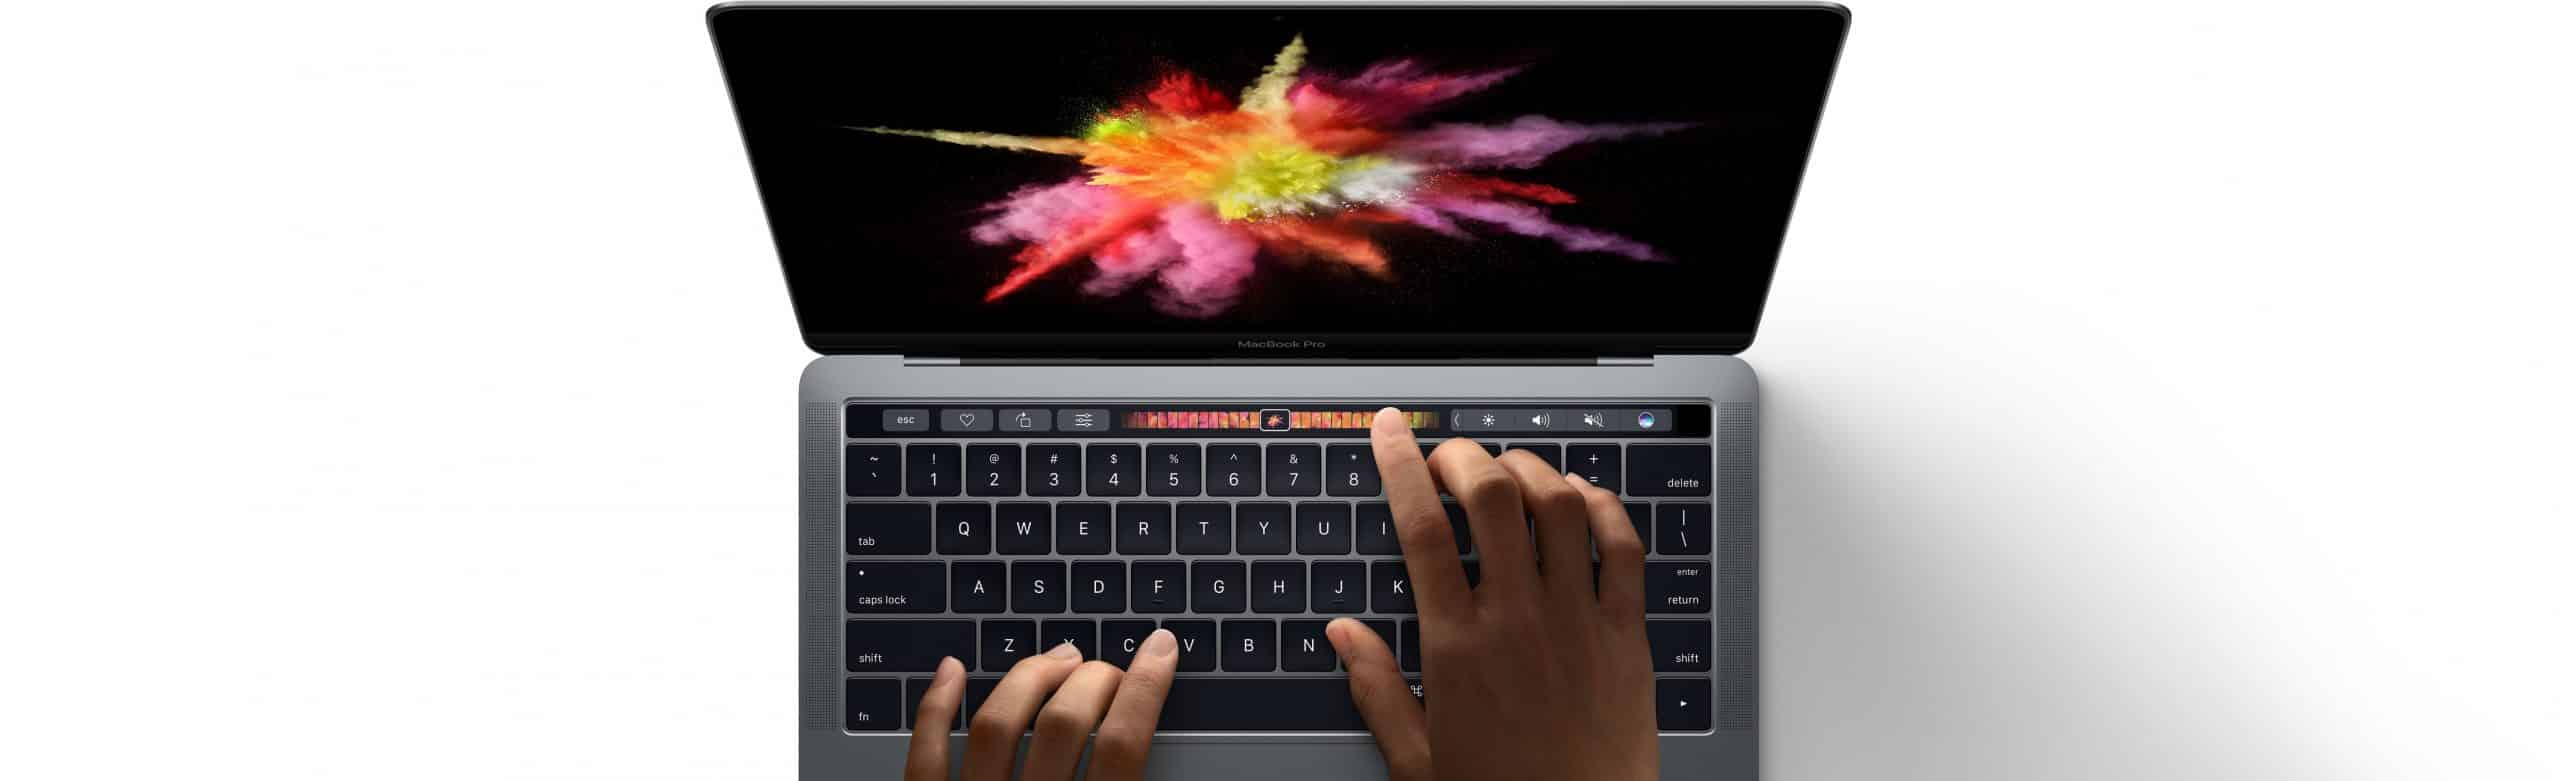 Apple déconseille de mettre un cache sur la webcam d'un MacBook